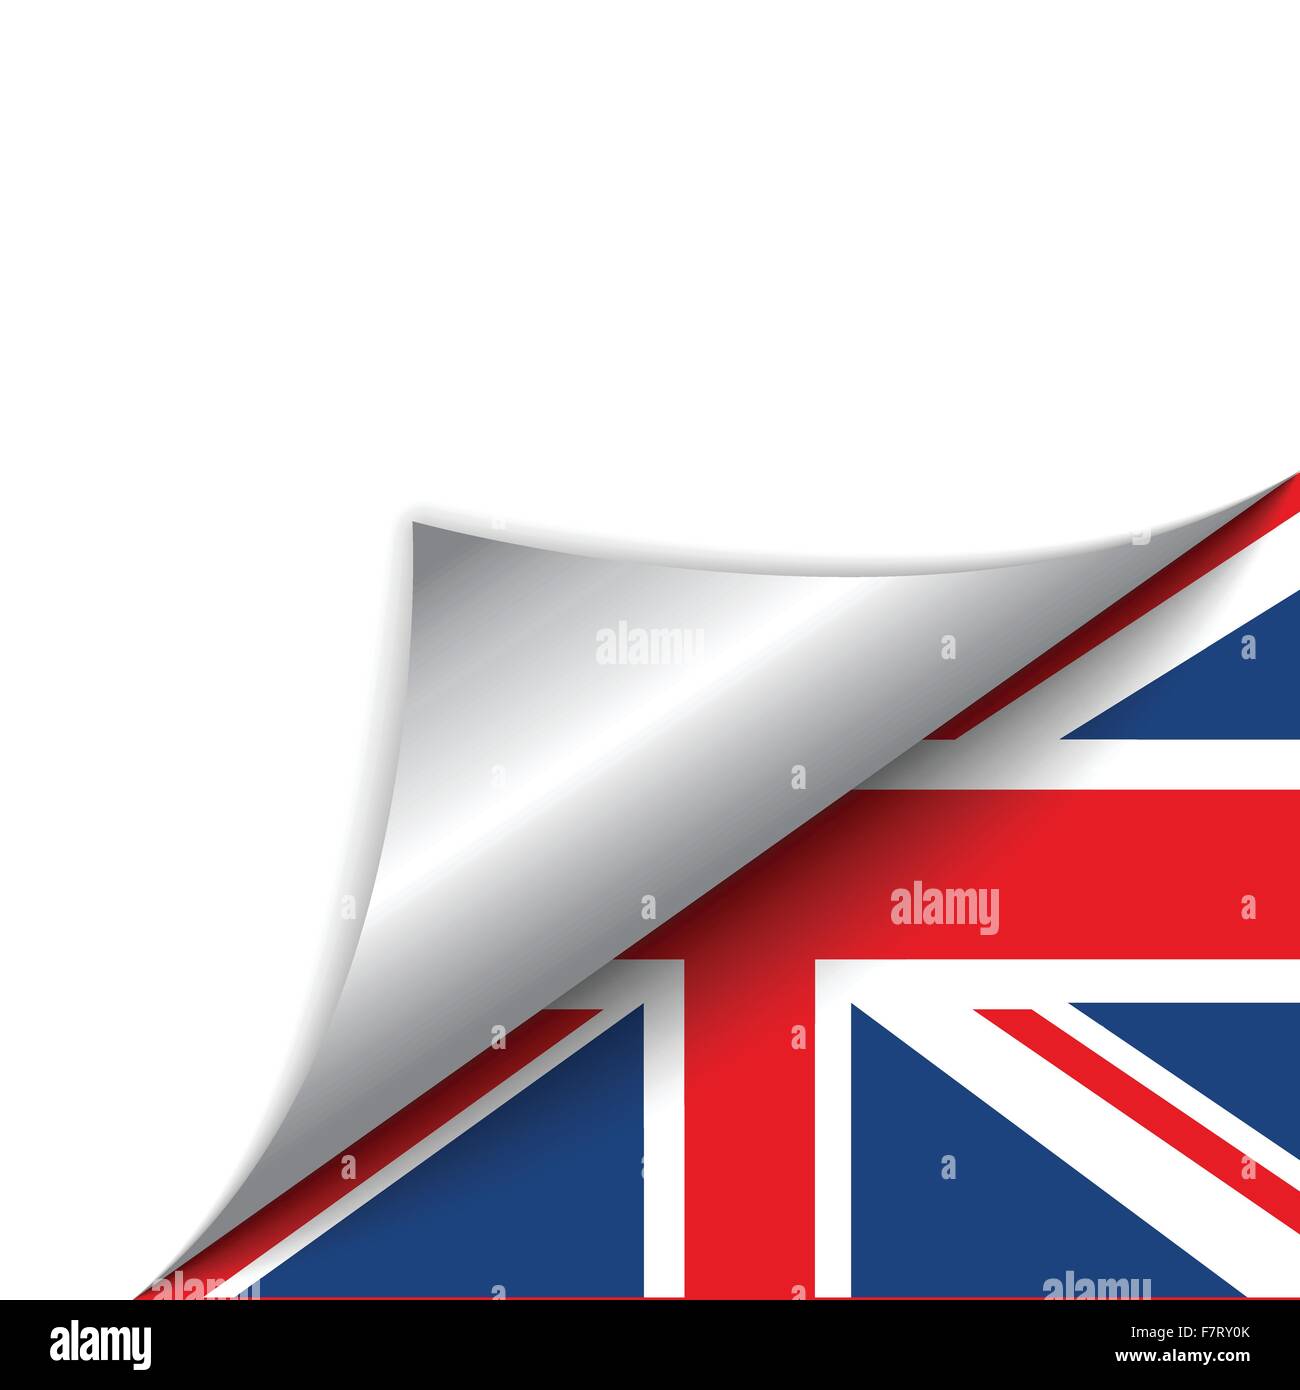 Royaume-uni drapeau du pays en tournant la page Illustration de Vecteur